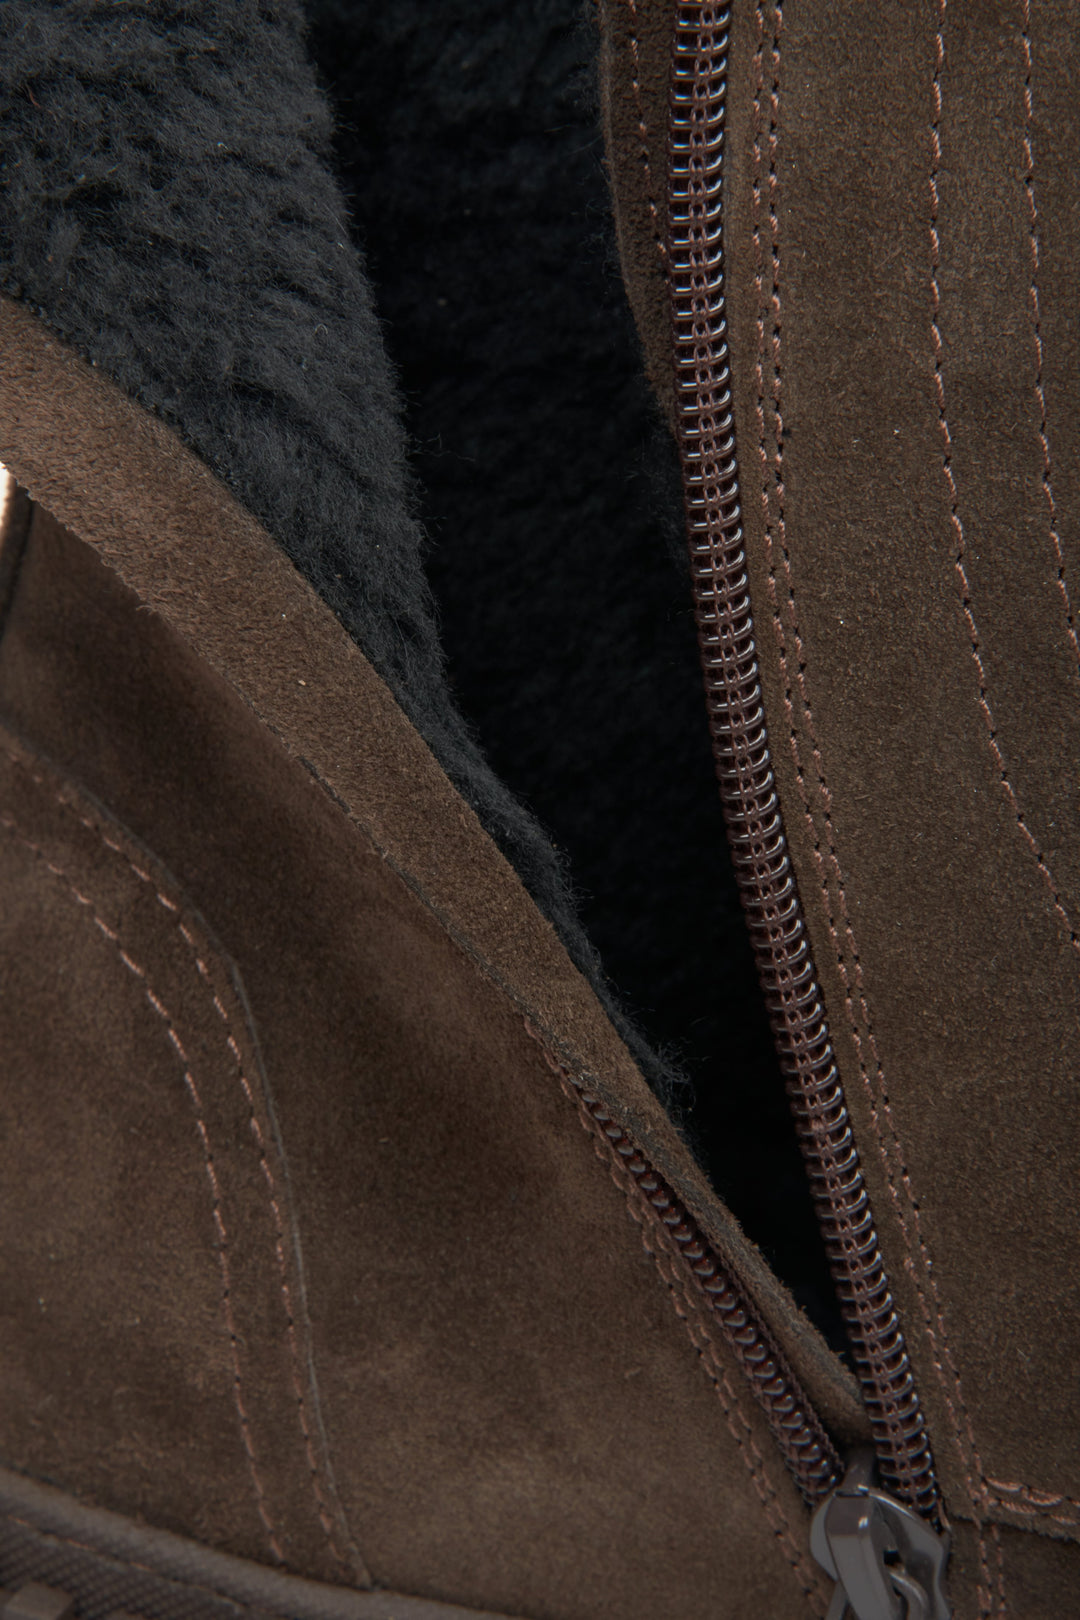 Workery damskie zamszowe na zimę w kolorze ciemnobrązowym marki Estro - zbliżenie na miękki wsad buta.